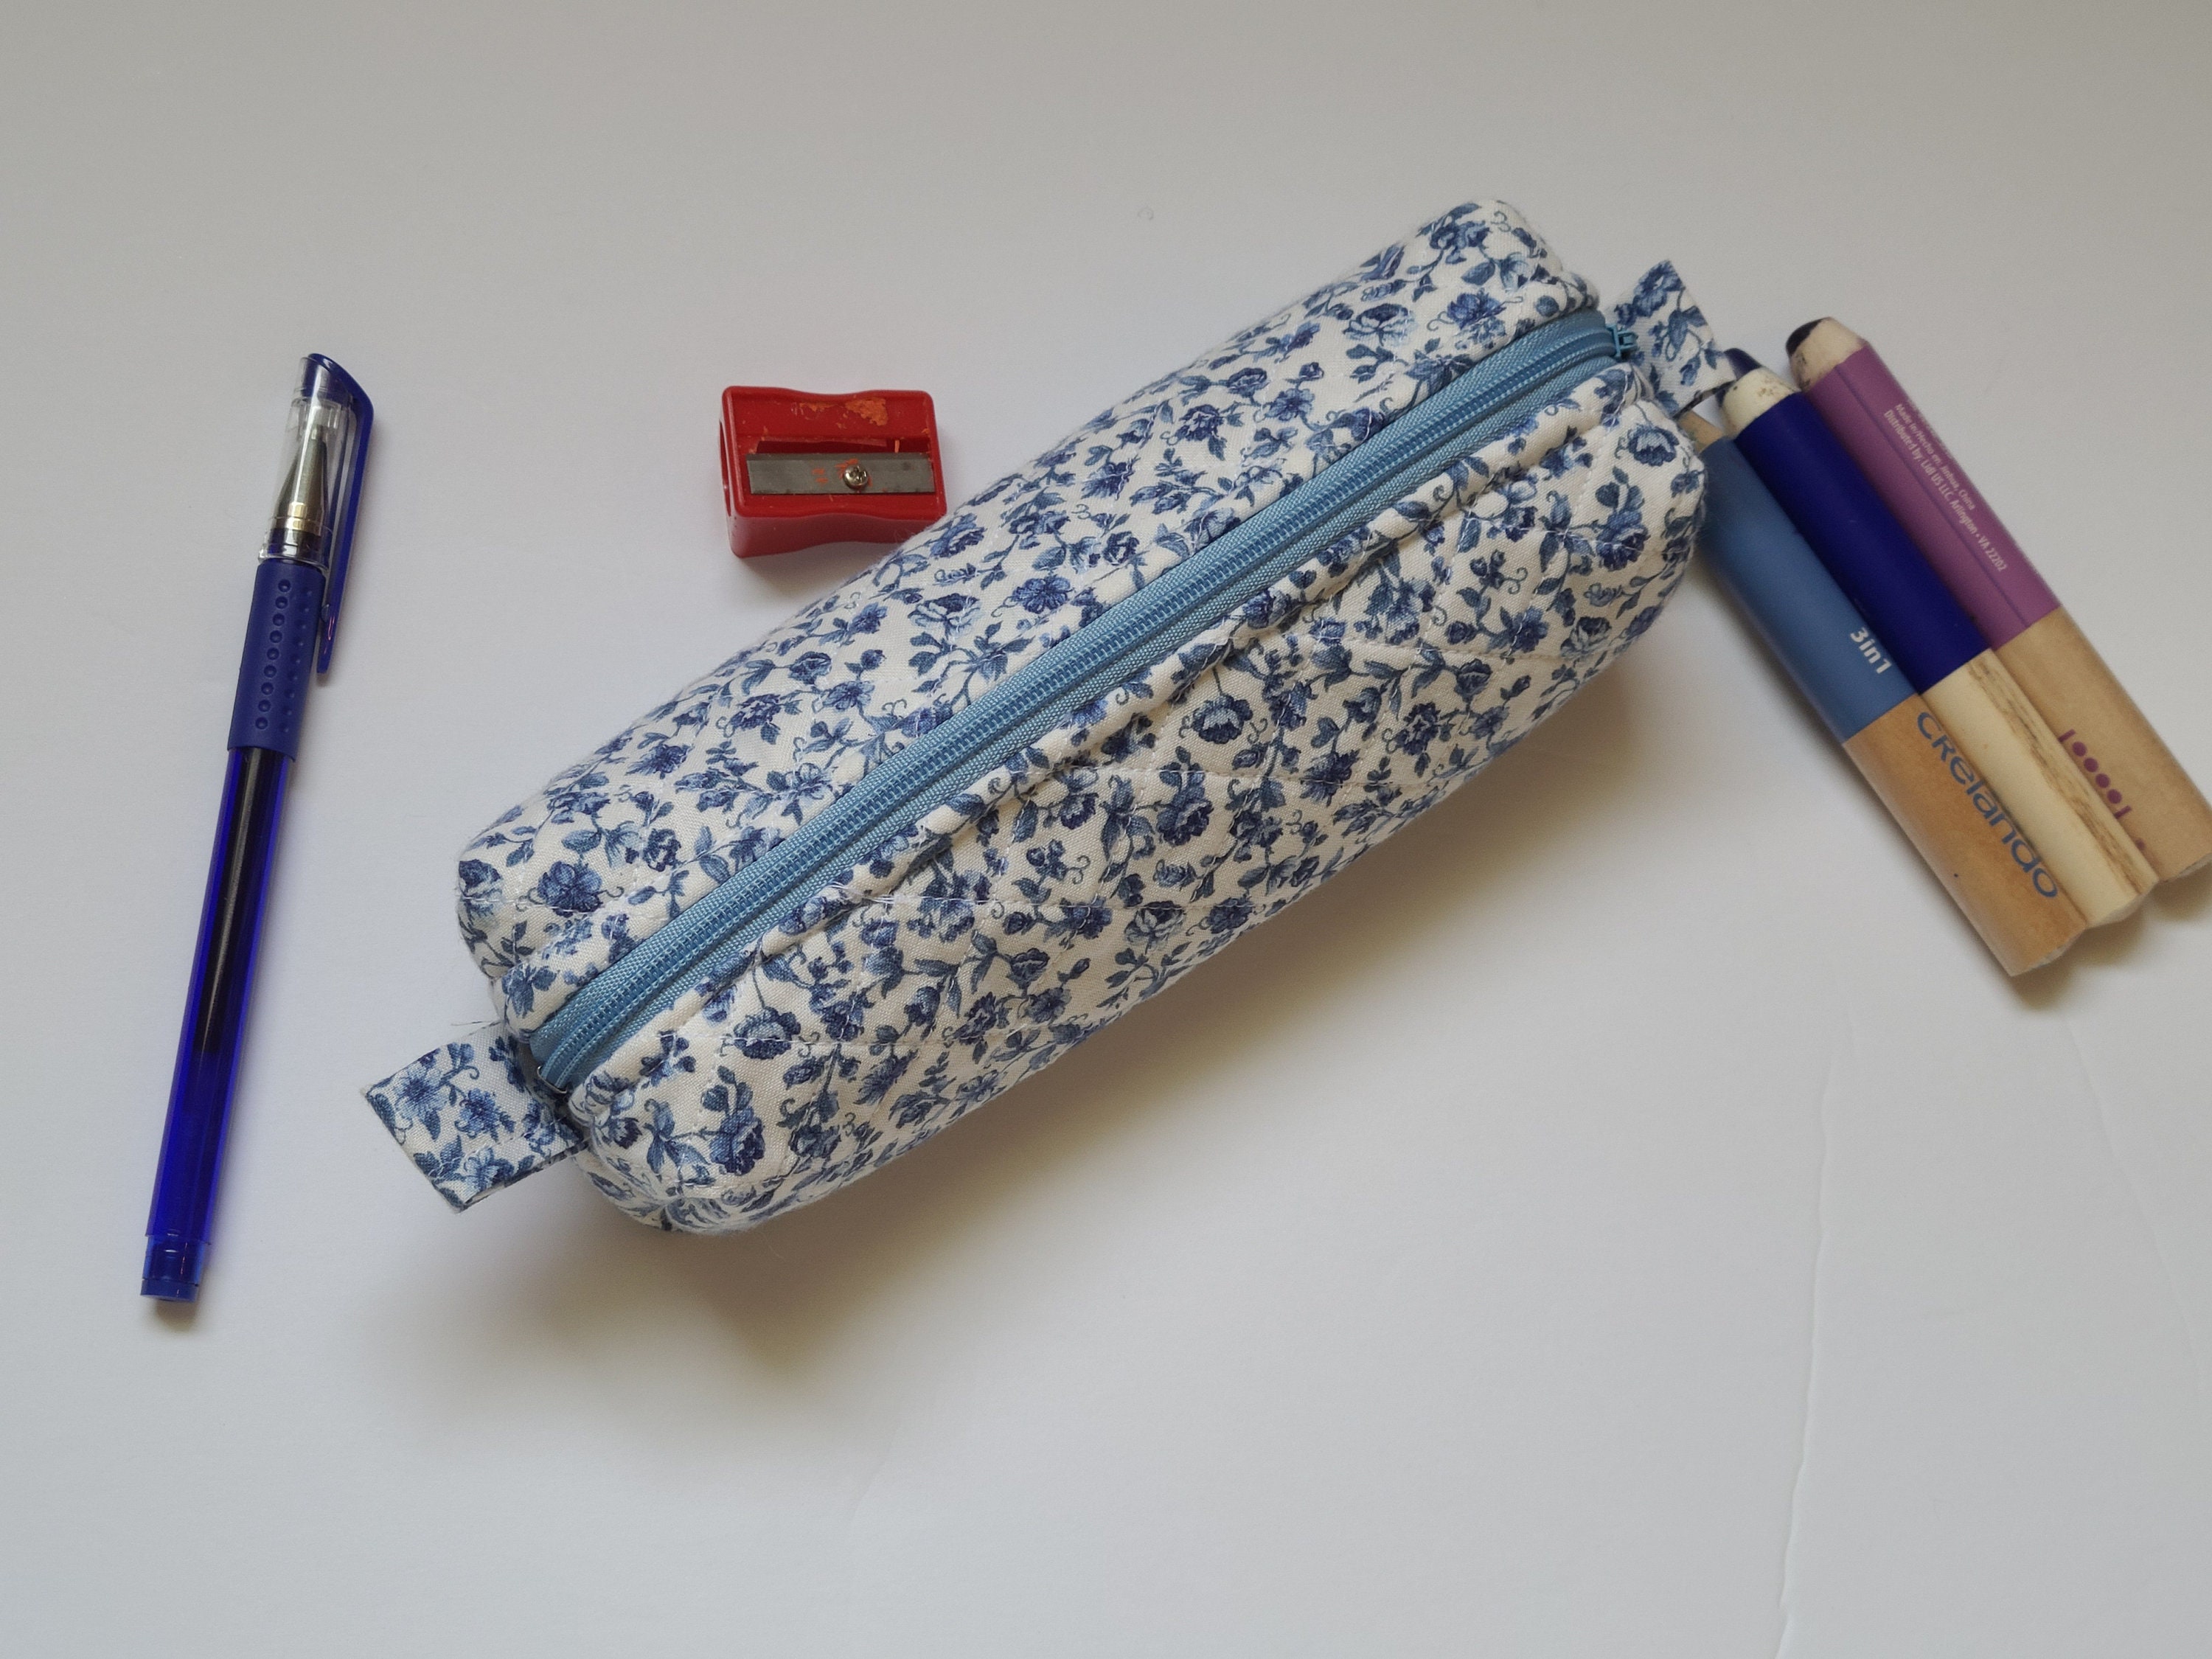 SDJMa Small Glitter Pencil Pouch, Small Pen Pencil Stationery Pouch Bag  Slim Design Zipper Pencil Pouch for Pens, Pencils, Marker, Pencil Pouch